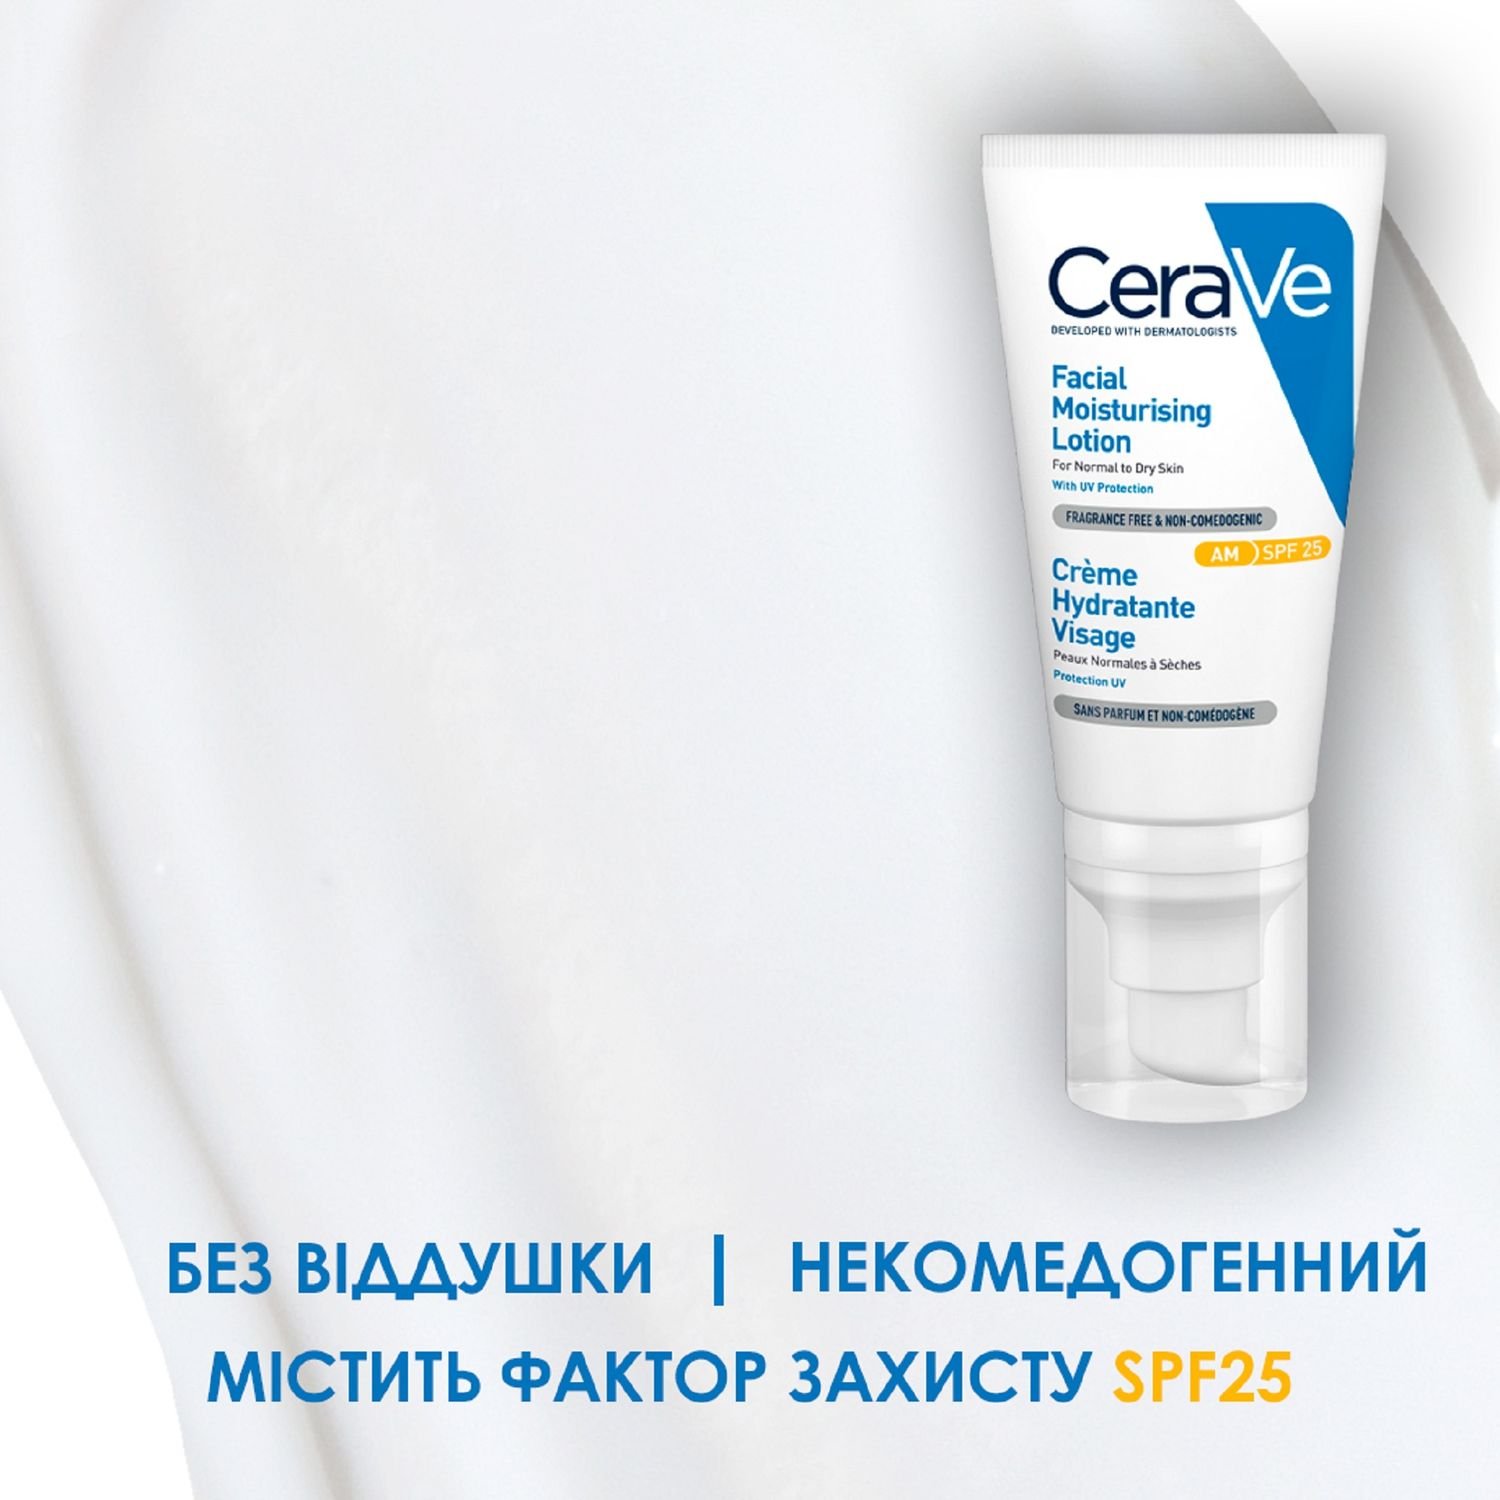 Дневной увлажняющий крем CeraVe для нормальной и сухой кожи лица с SPF 30, 52 мл (MB525400) - фото 3